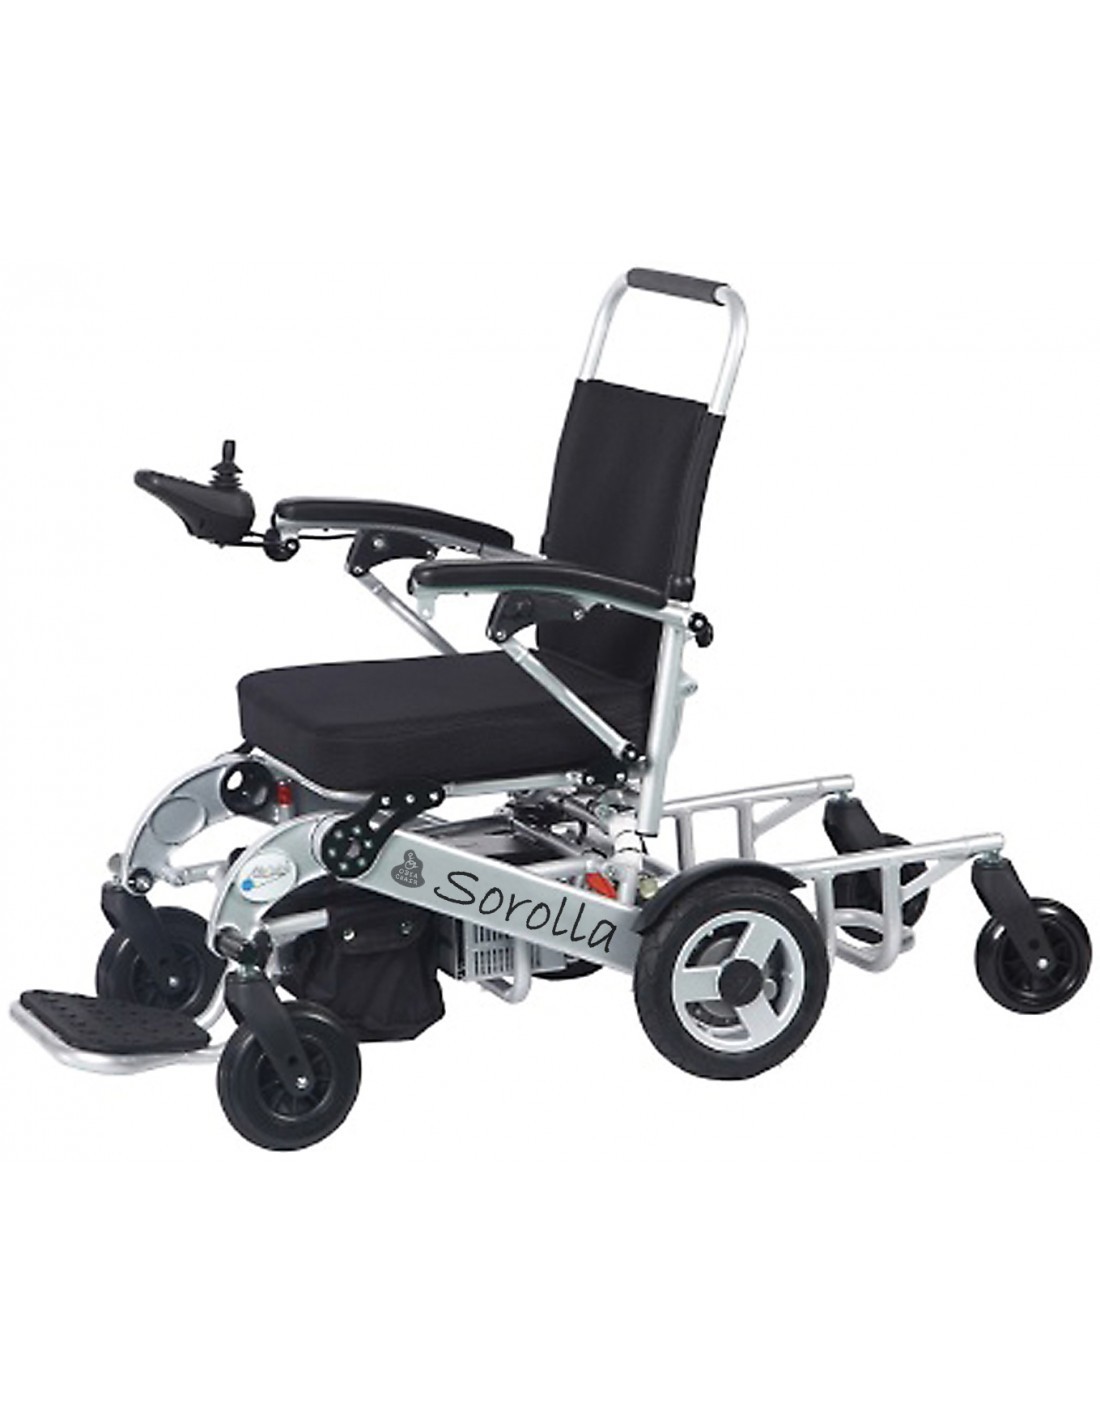 Rampas extensibles para sillas de ruedas con dos railes.